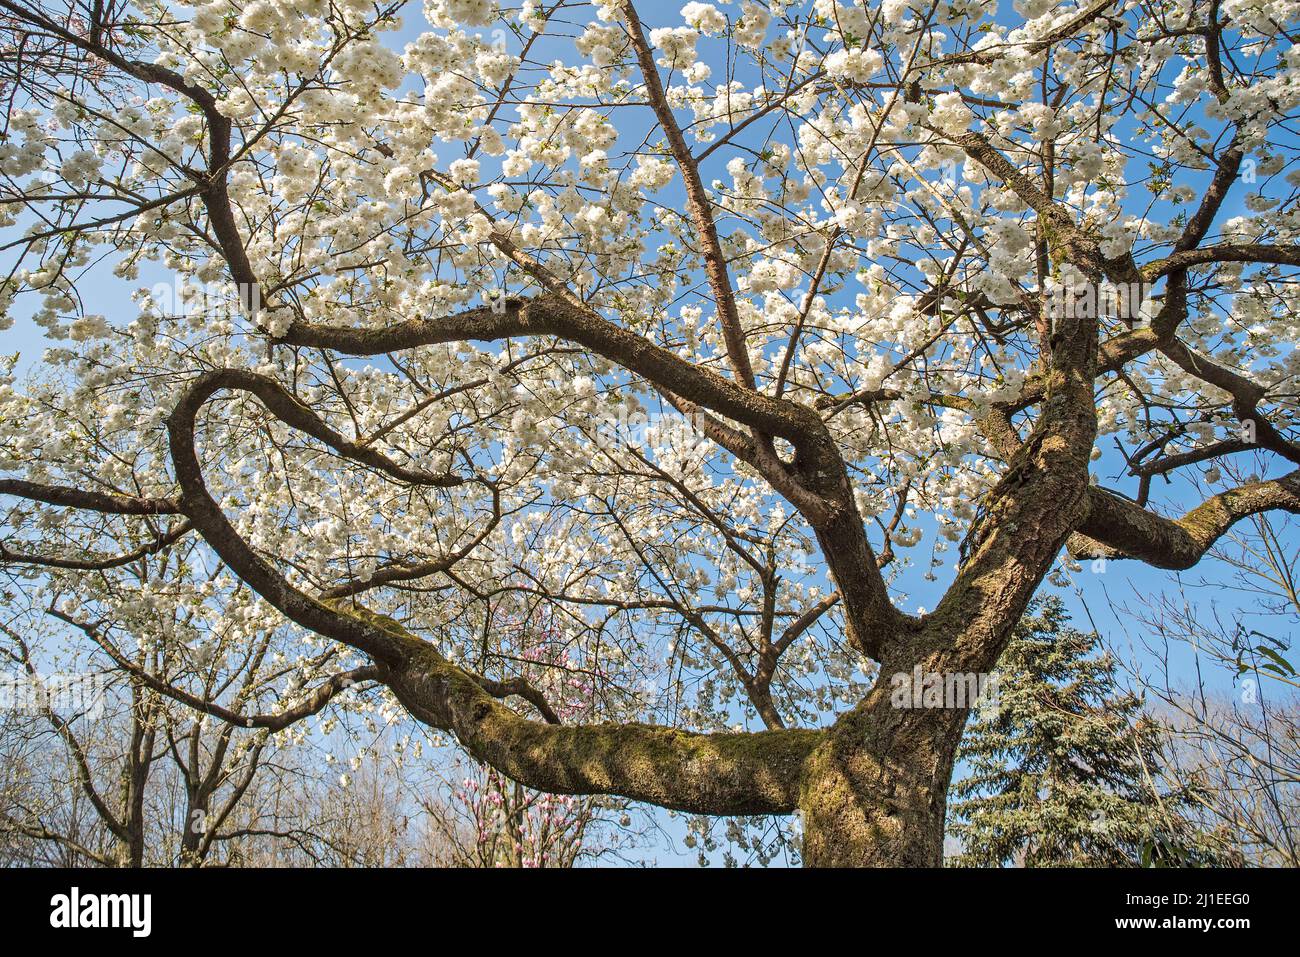 Baño japonés: entre la pureza y las flores de cerezo